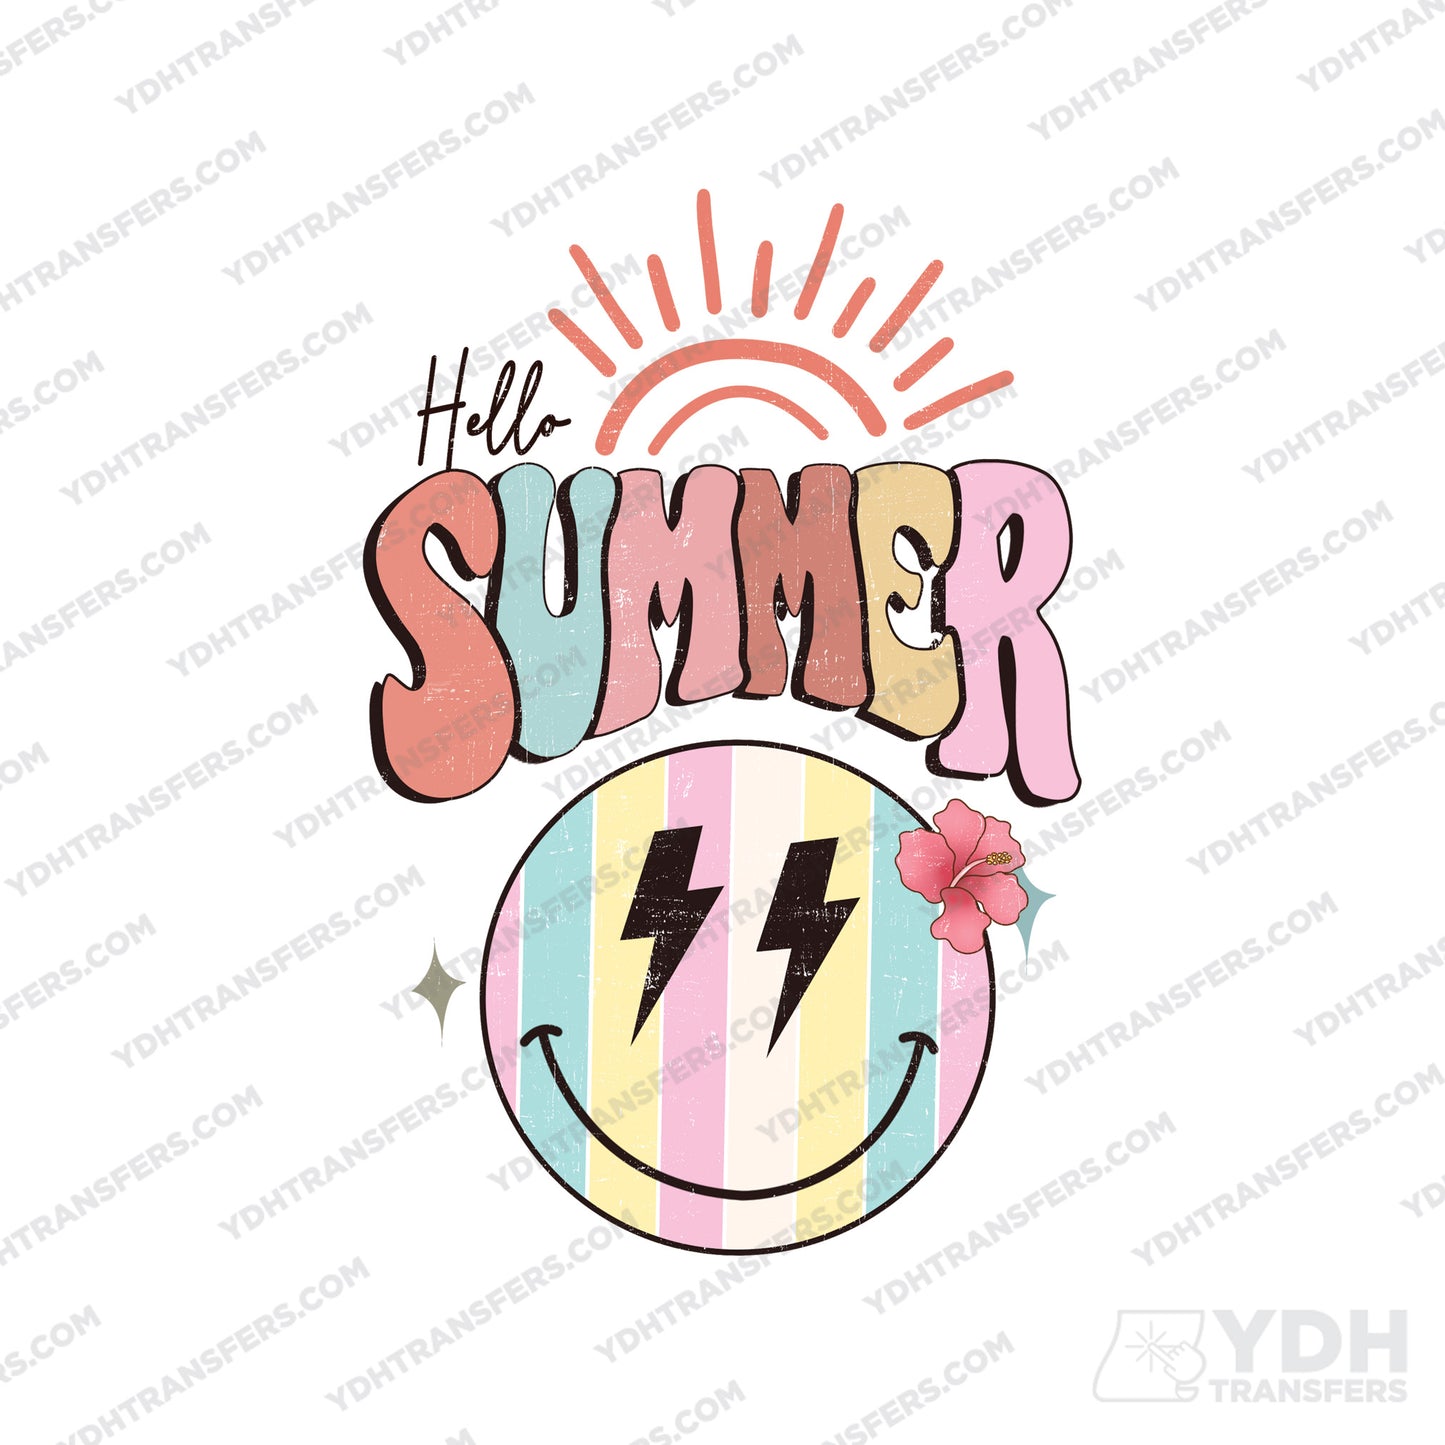 Hello Summer Full Color Transfer